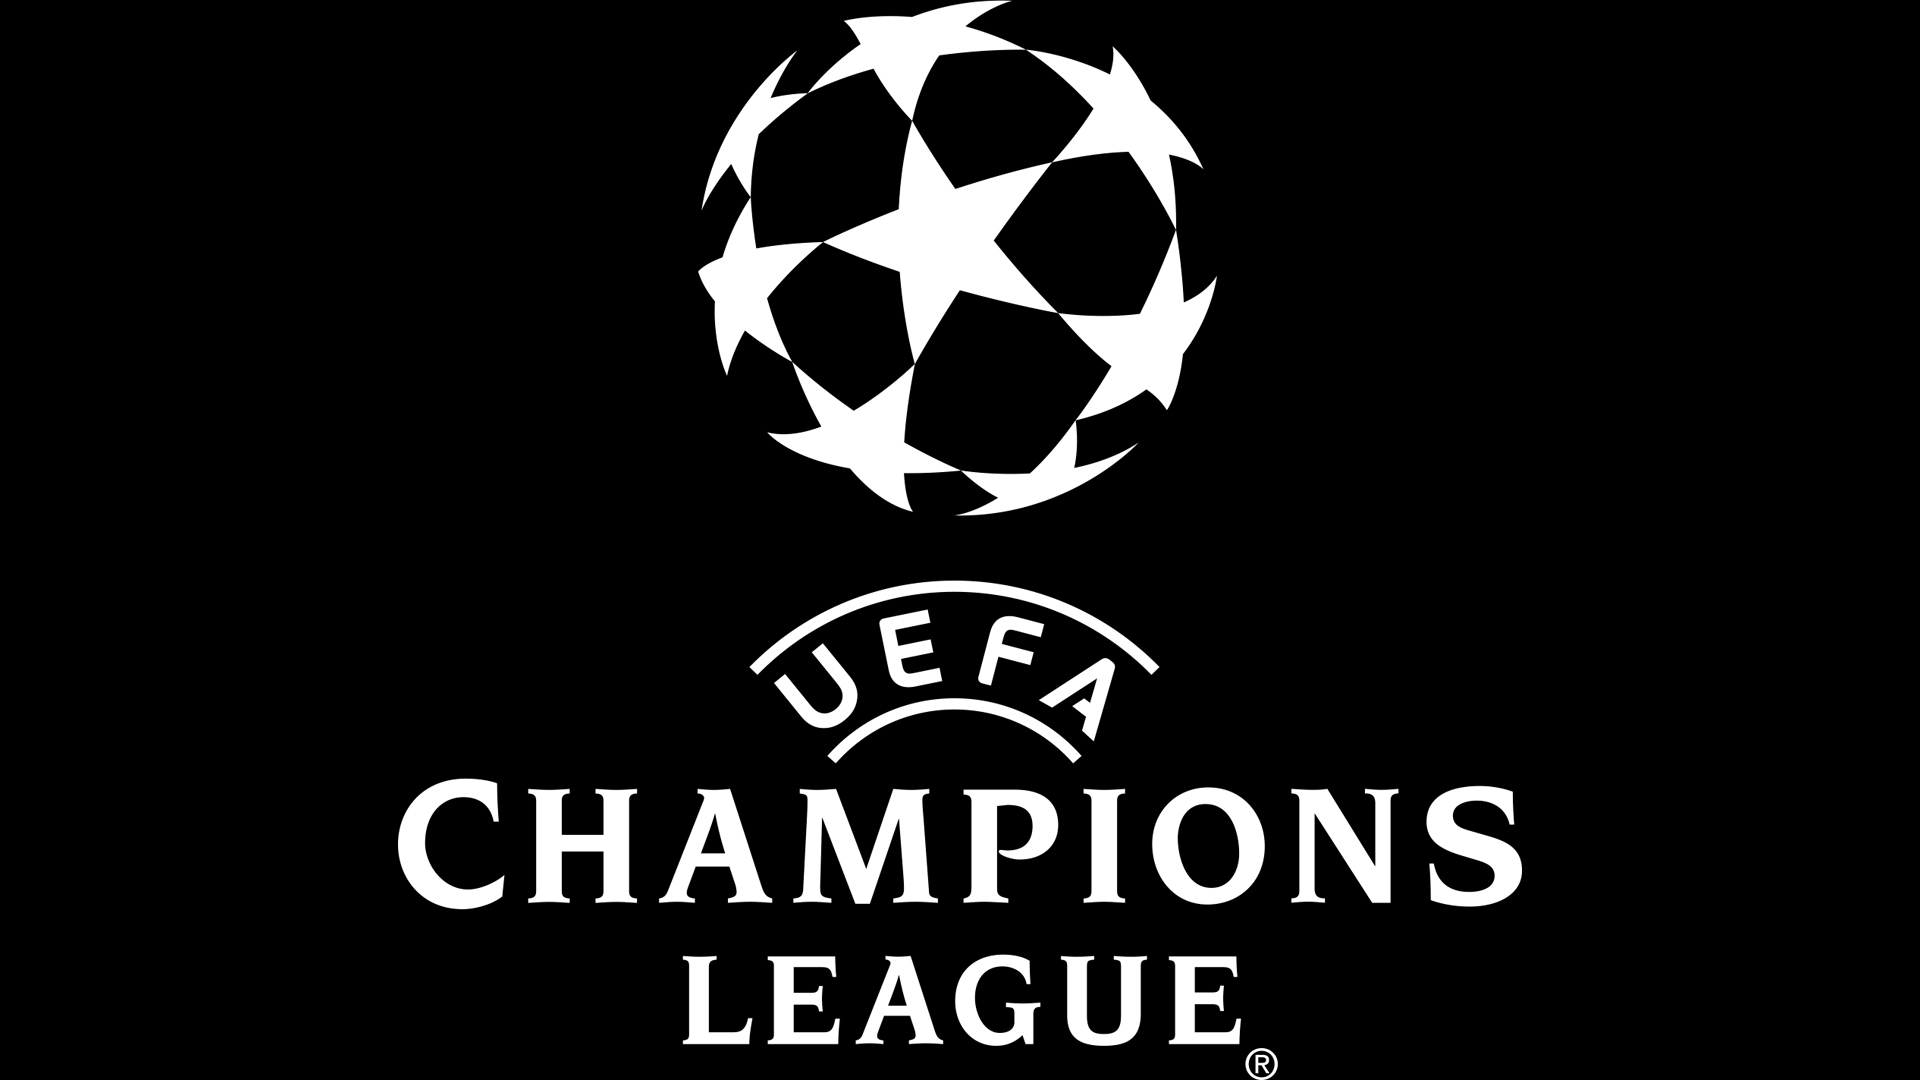 uefa champions league 2020 schedule